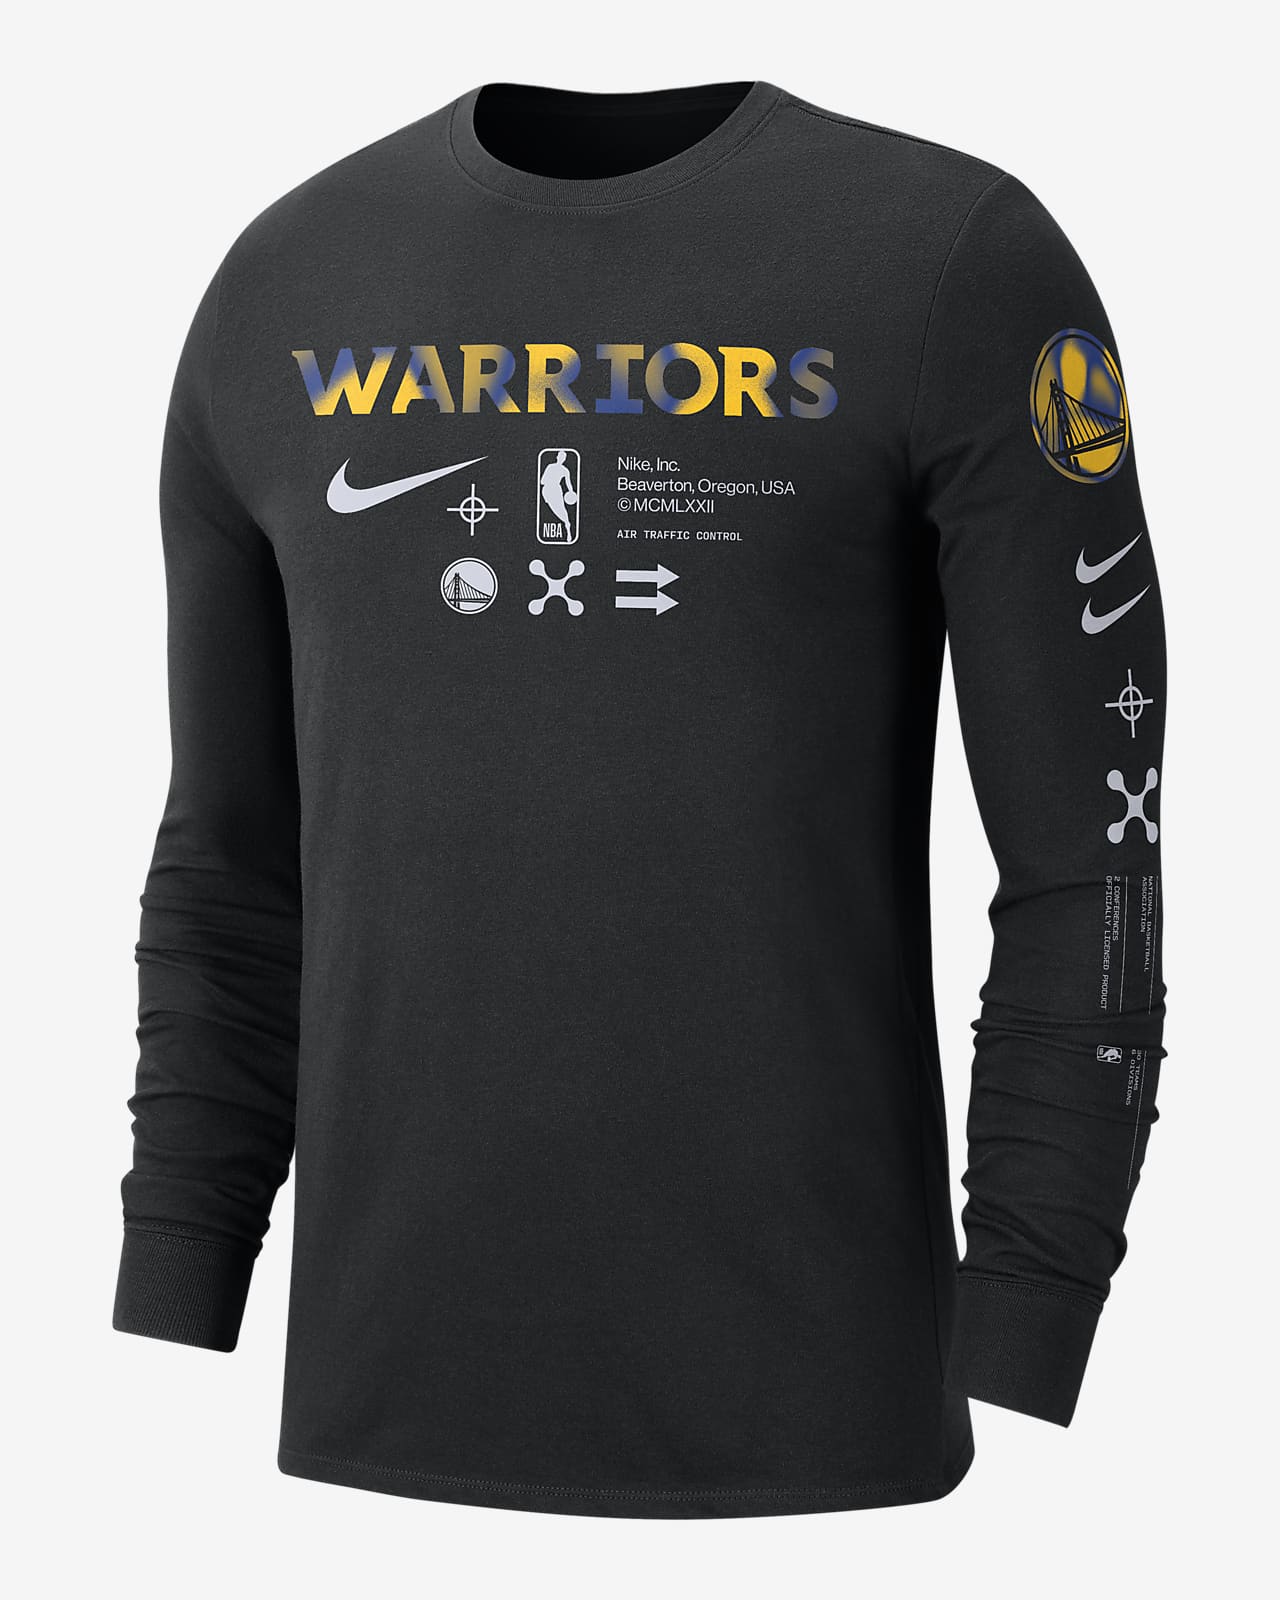 Golden State Warriors Men's Nike NBA Long-Sleeve T-Shirt